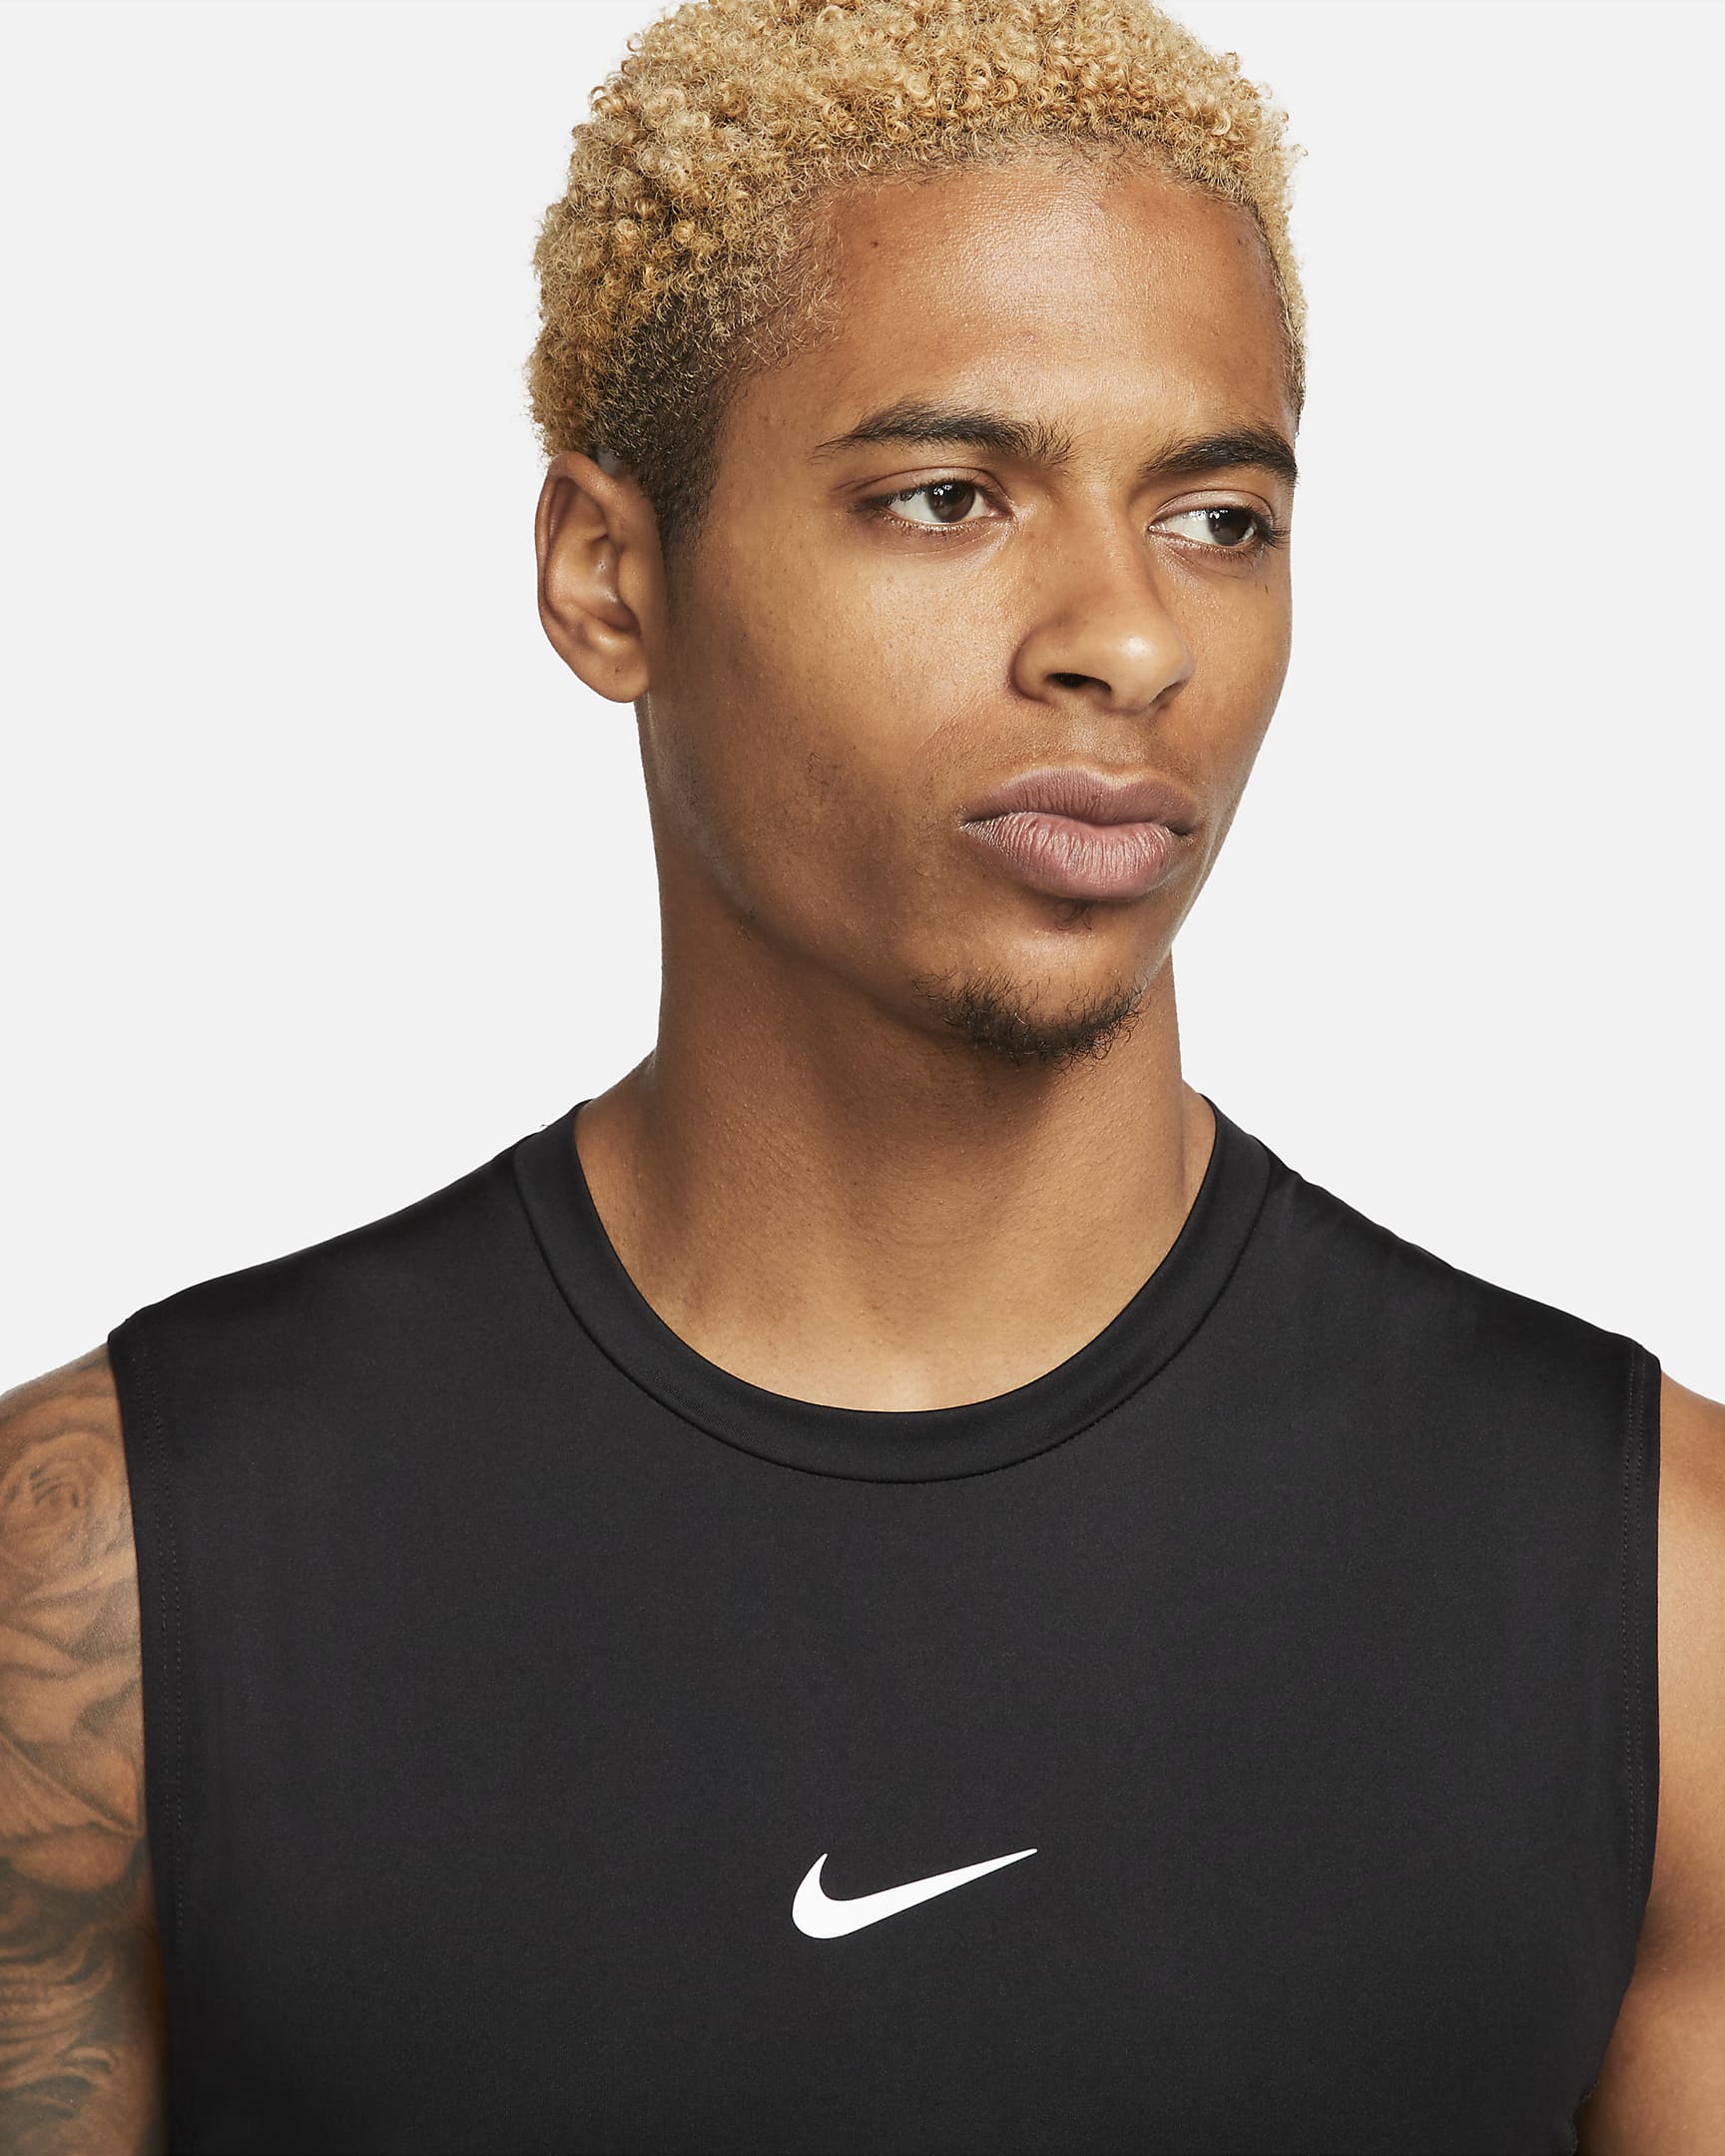 Nike Pro Men's Dri-FIT Tight Sleeveless Fitness Top - Black/White